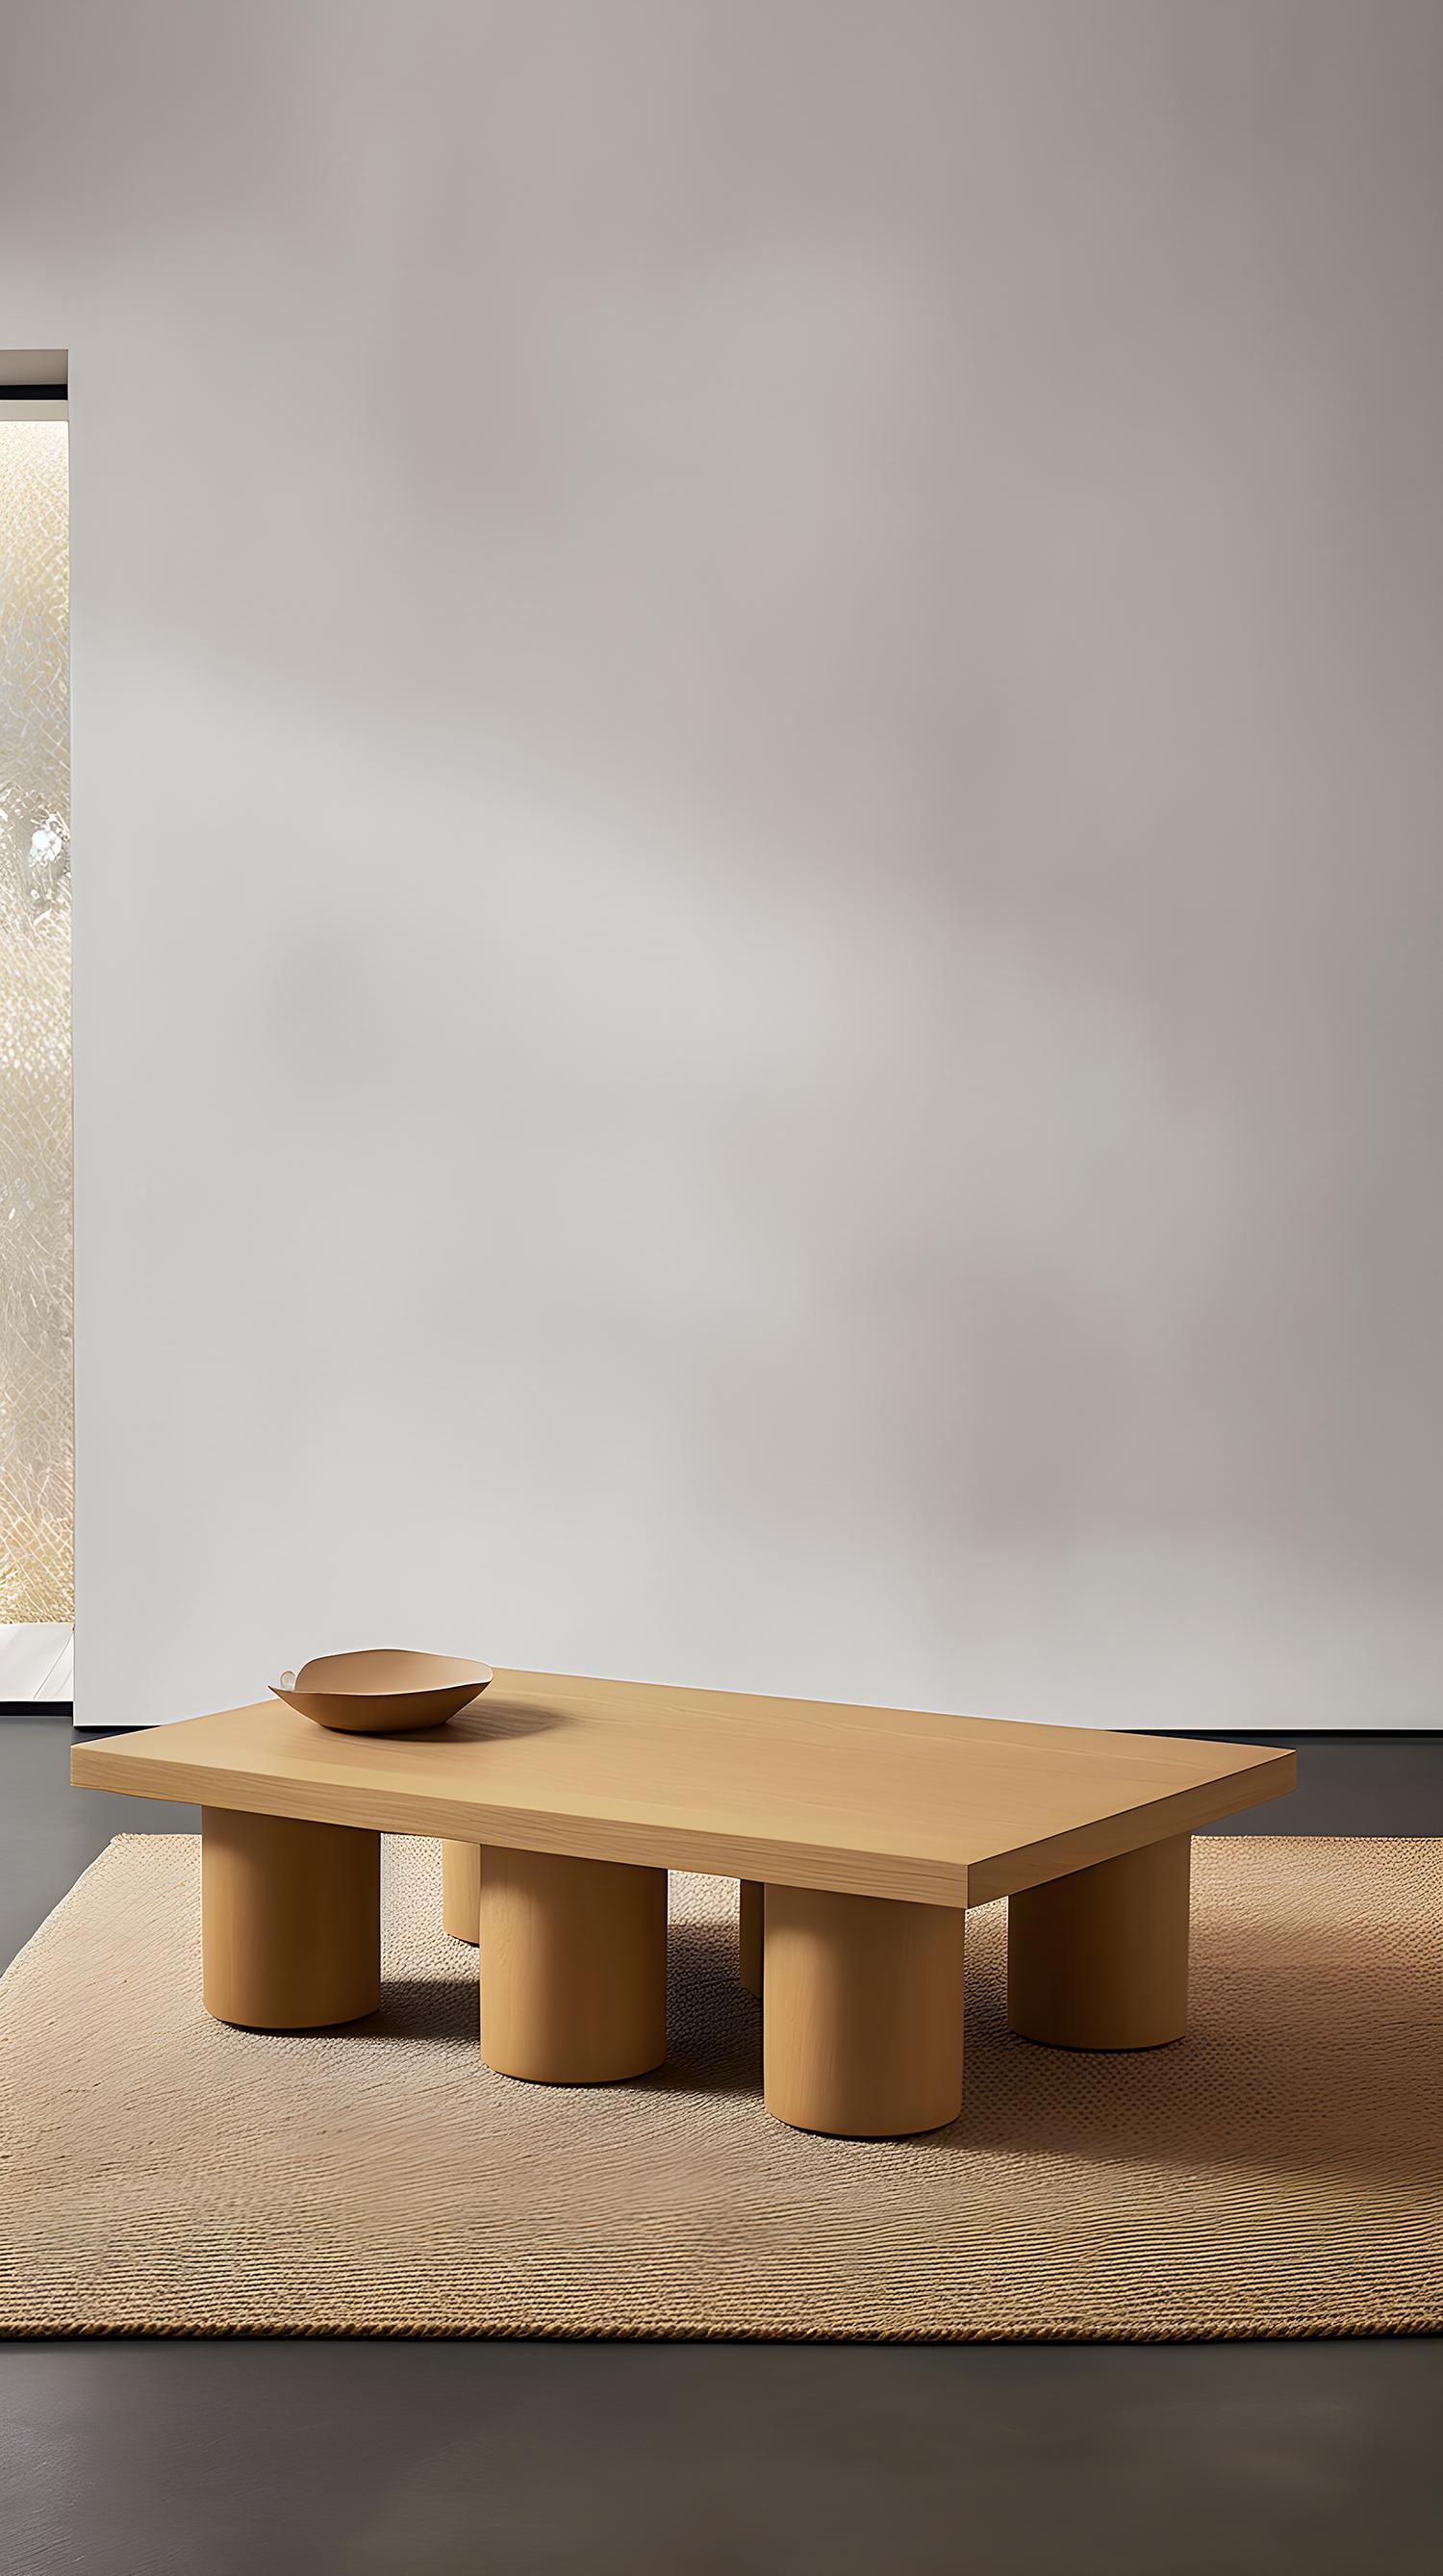 Table basse rectangulaire brutaliste en placage de chêne rouge, Podio by NONO

L'équipe de design de NONO présente une table basse qui respire l'élégance et la modernité. Cette pièce repose sur un ensemble de colonnes cylindriques, qui constituent